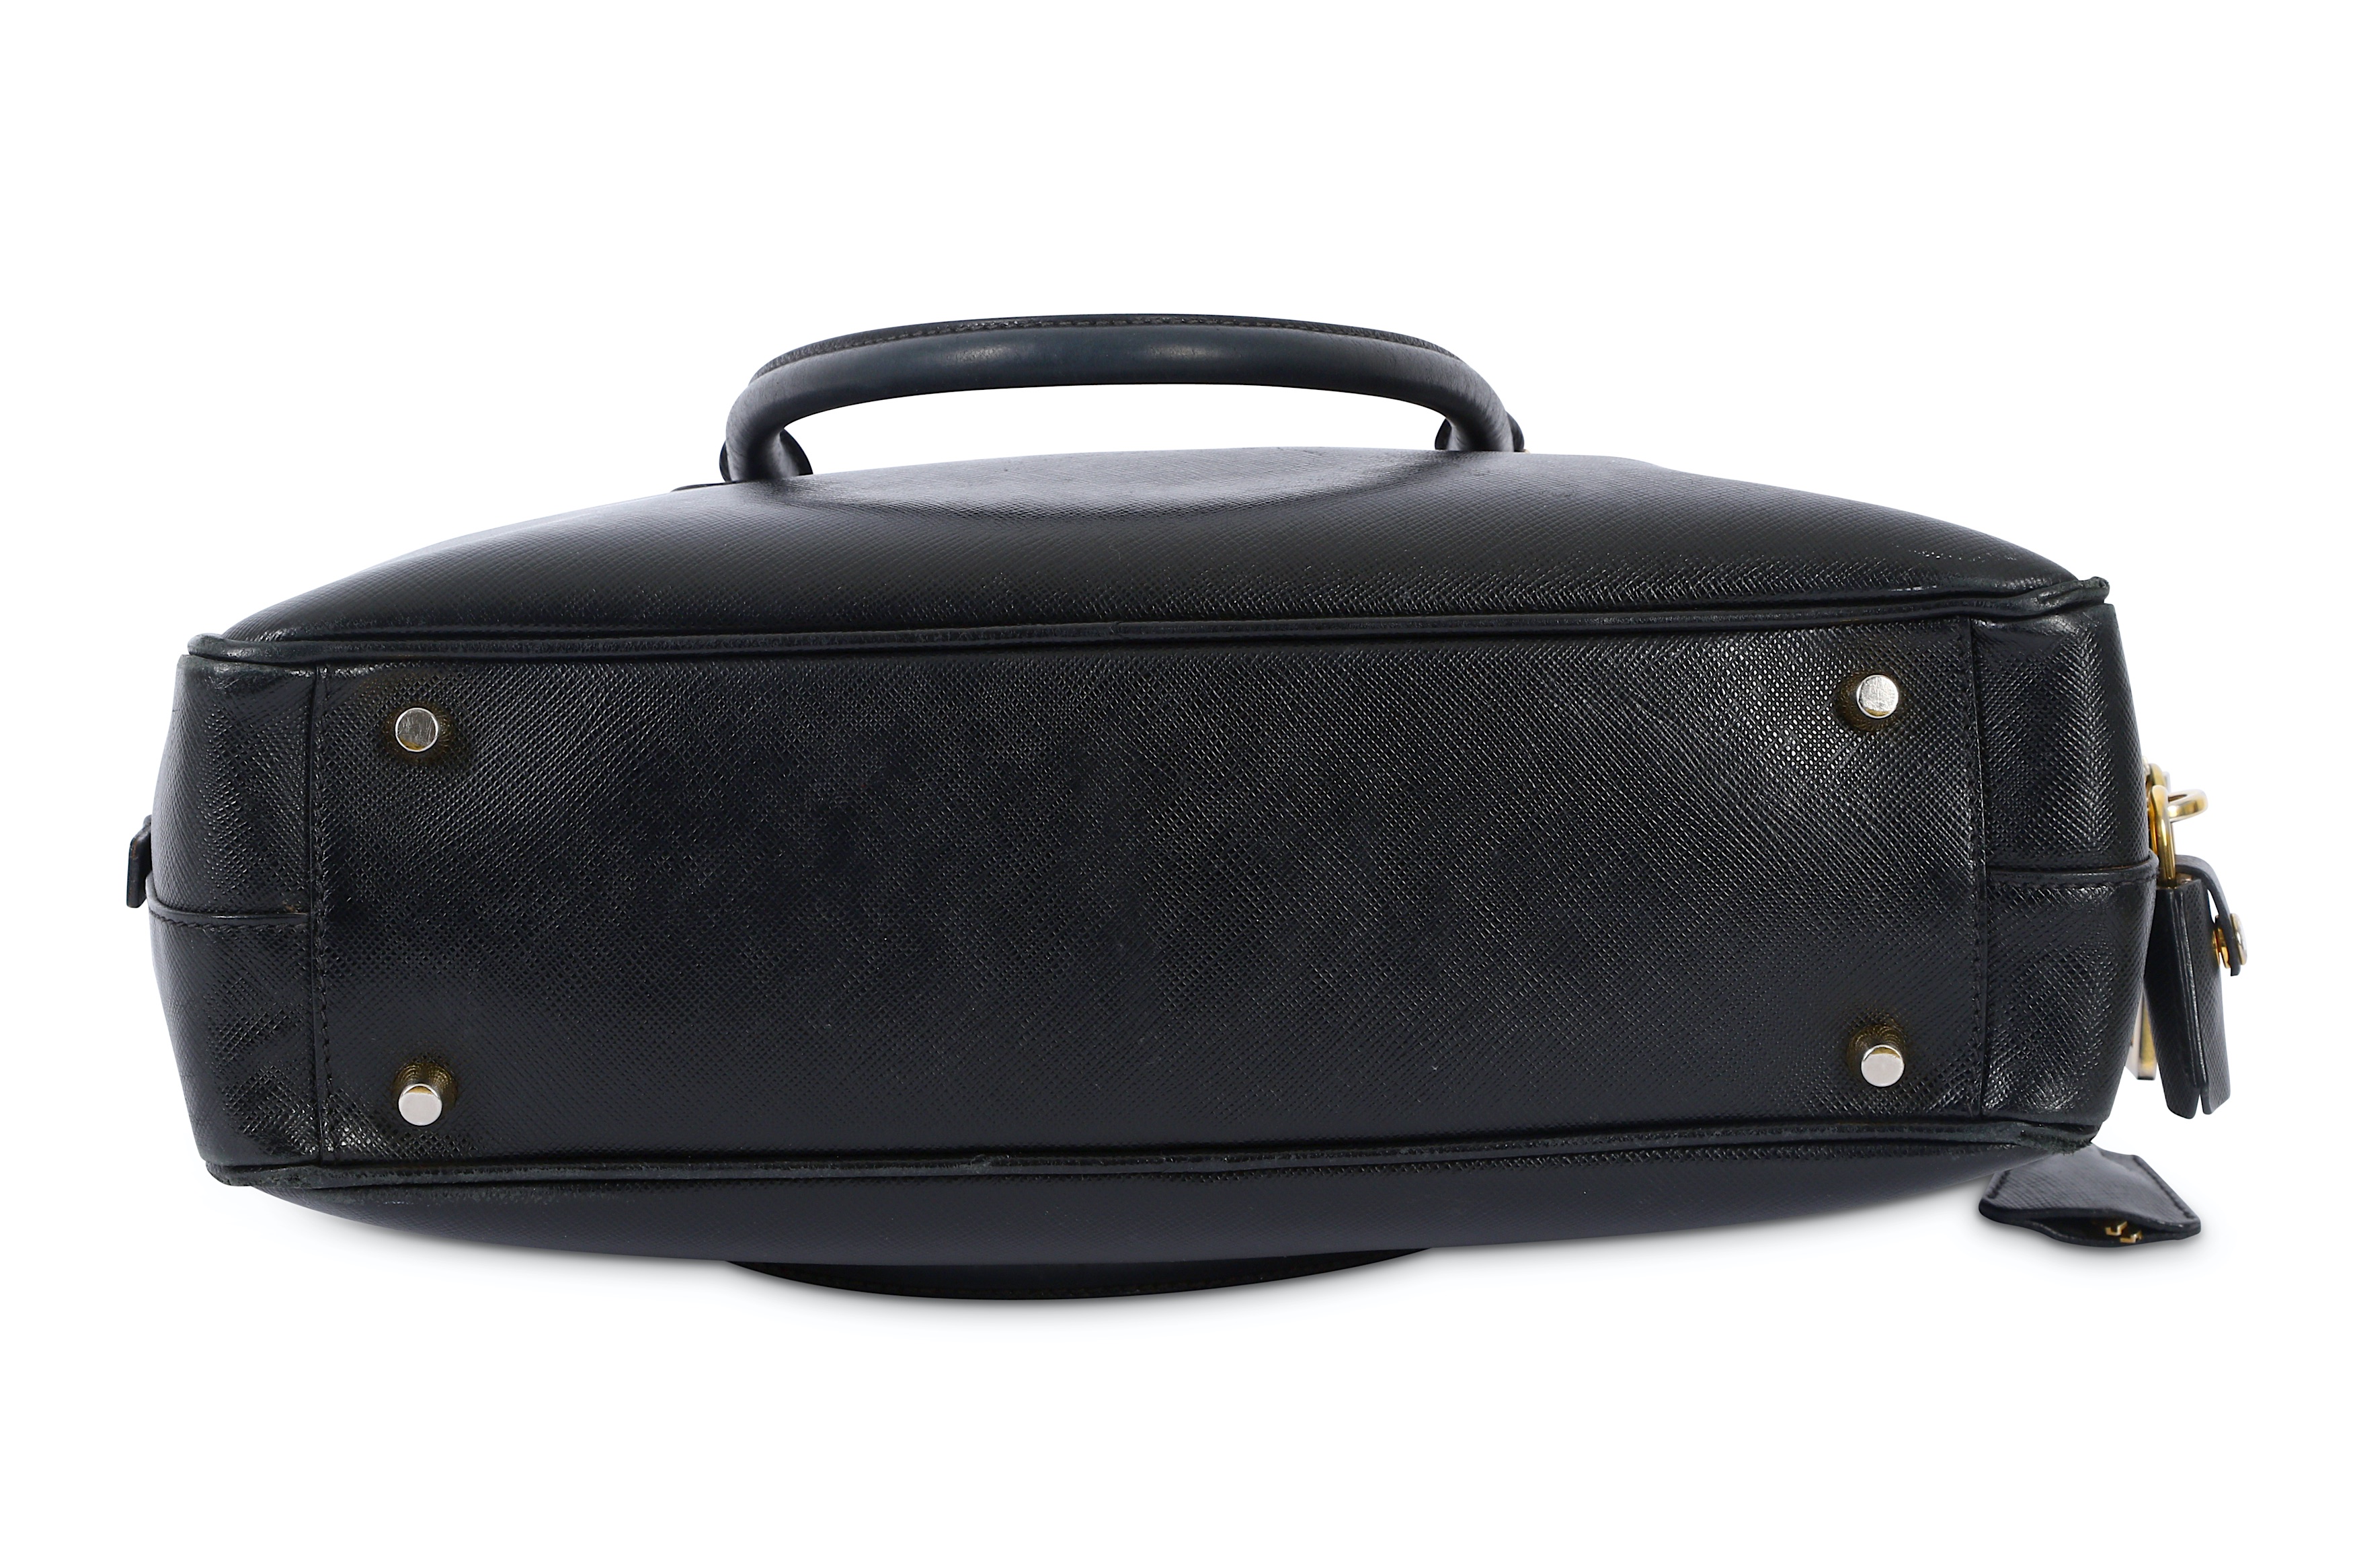 Prada Saffiano Nero Handbag - Image 6 of 8